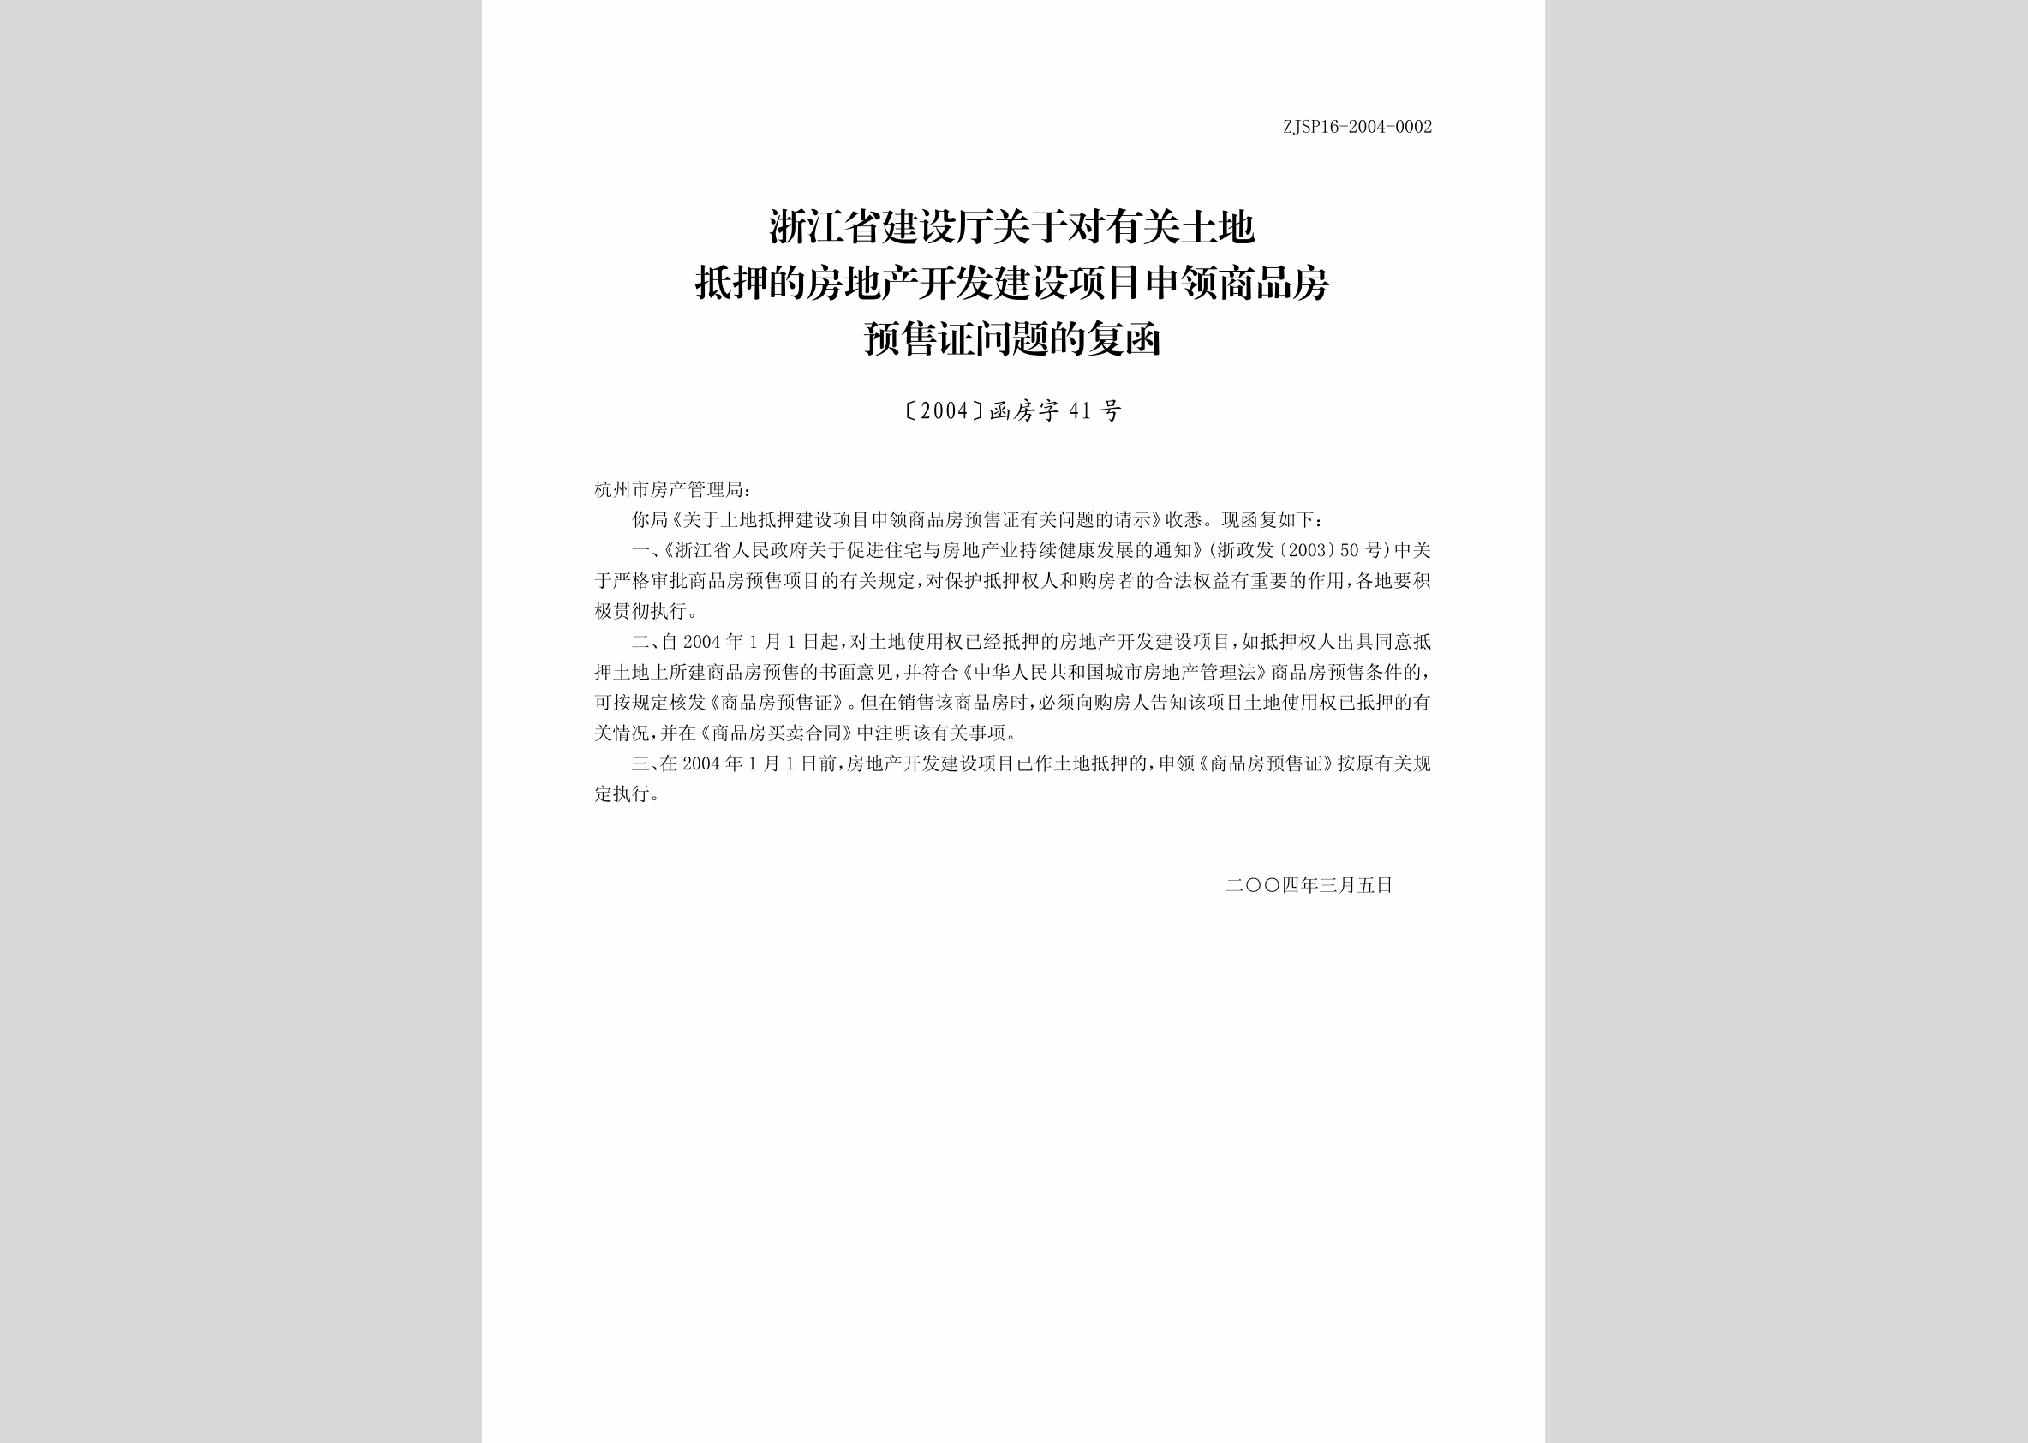 [2004]函房字41号：浙江省建设厅关于对有关土地抵押的房地产开发建设项目申领商品房预售证问题的复函